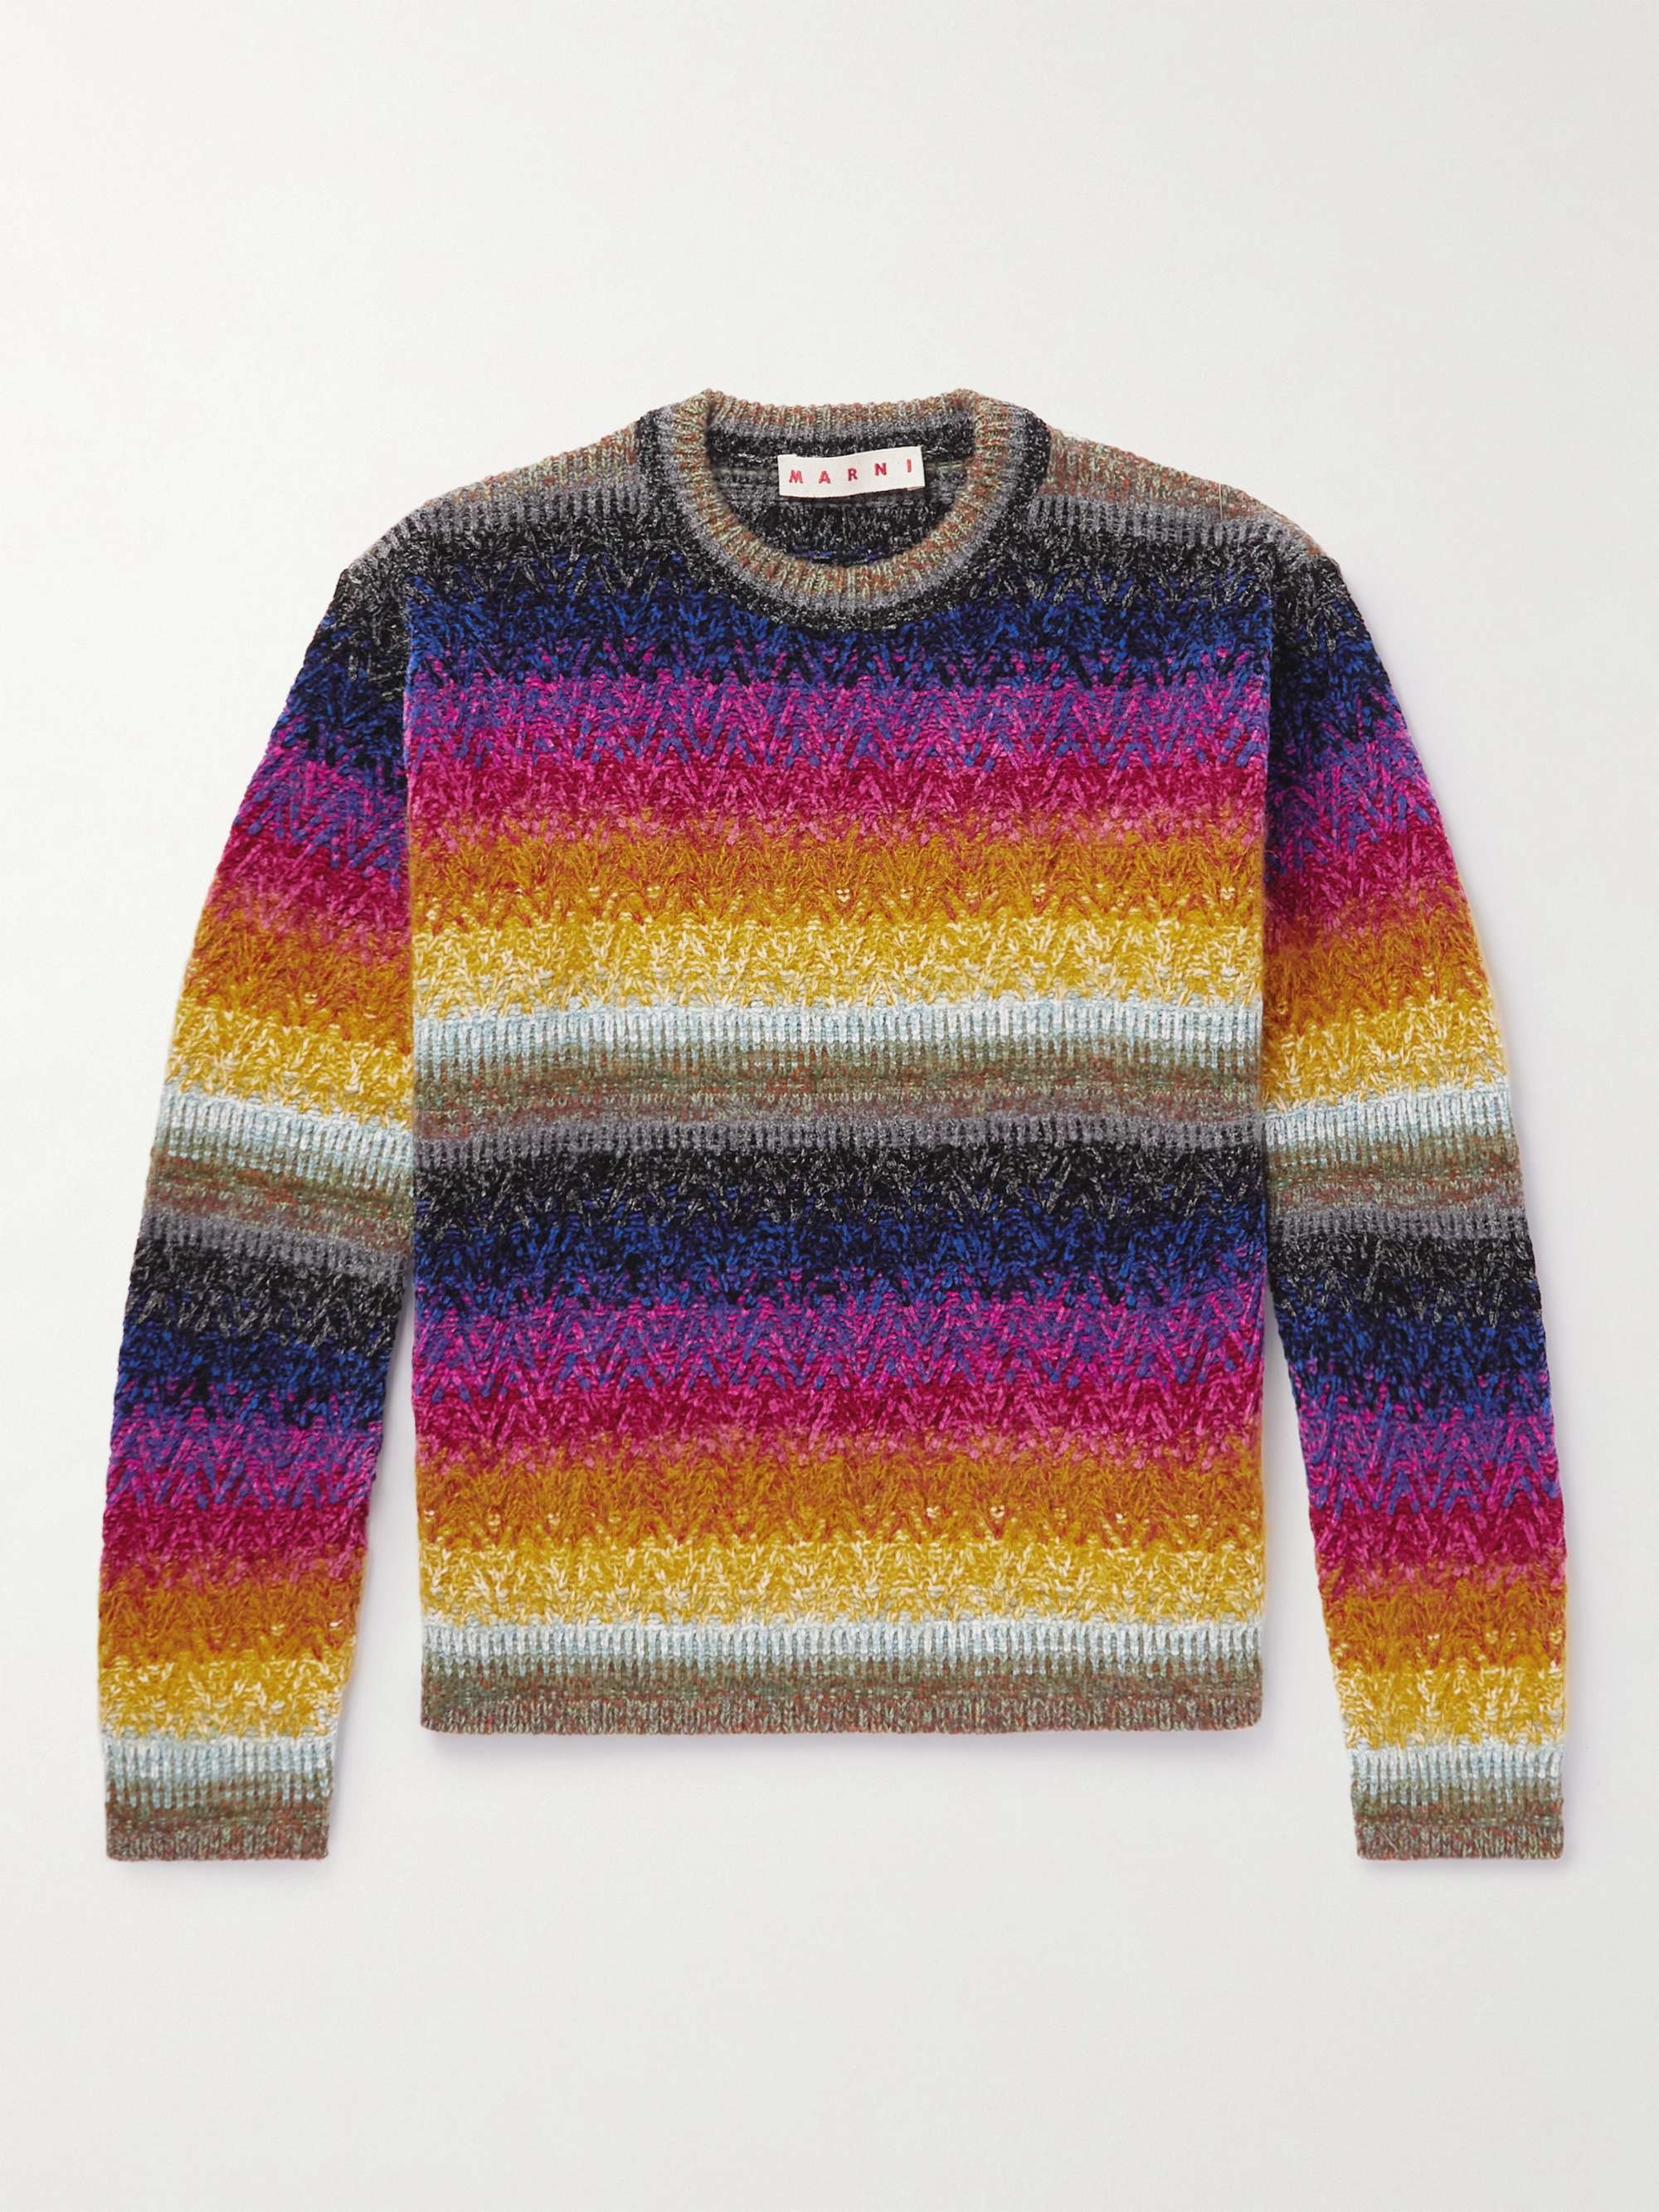 MARNI Striped Chenille Sweater for Men | MR PORTER